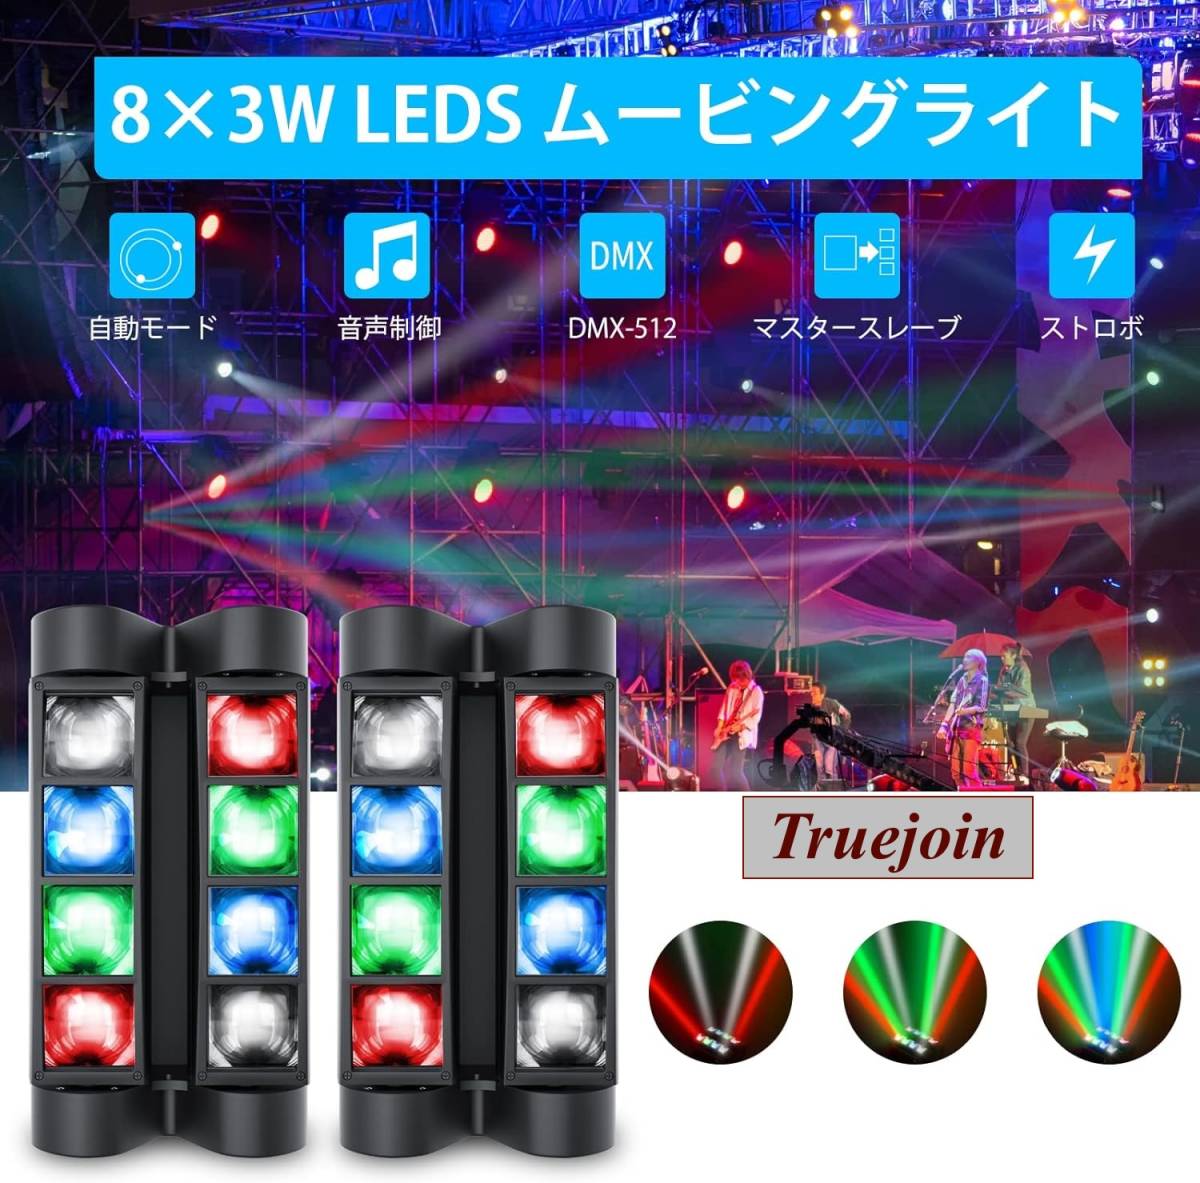 ムービングライト 8x3W LED 舞台照明 2台セット ディスコライト ステージライト ステージ照明 DMX512 7/13CH パーティライト LED